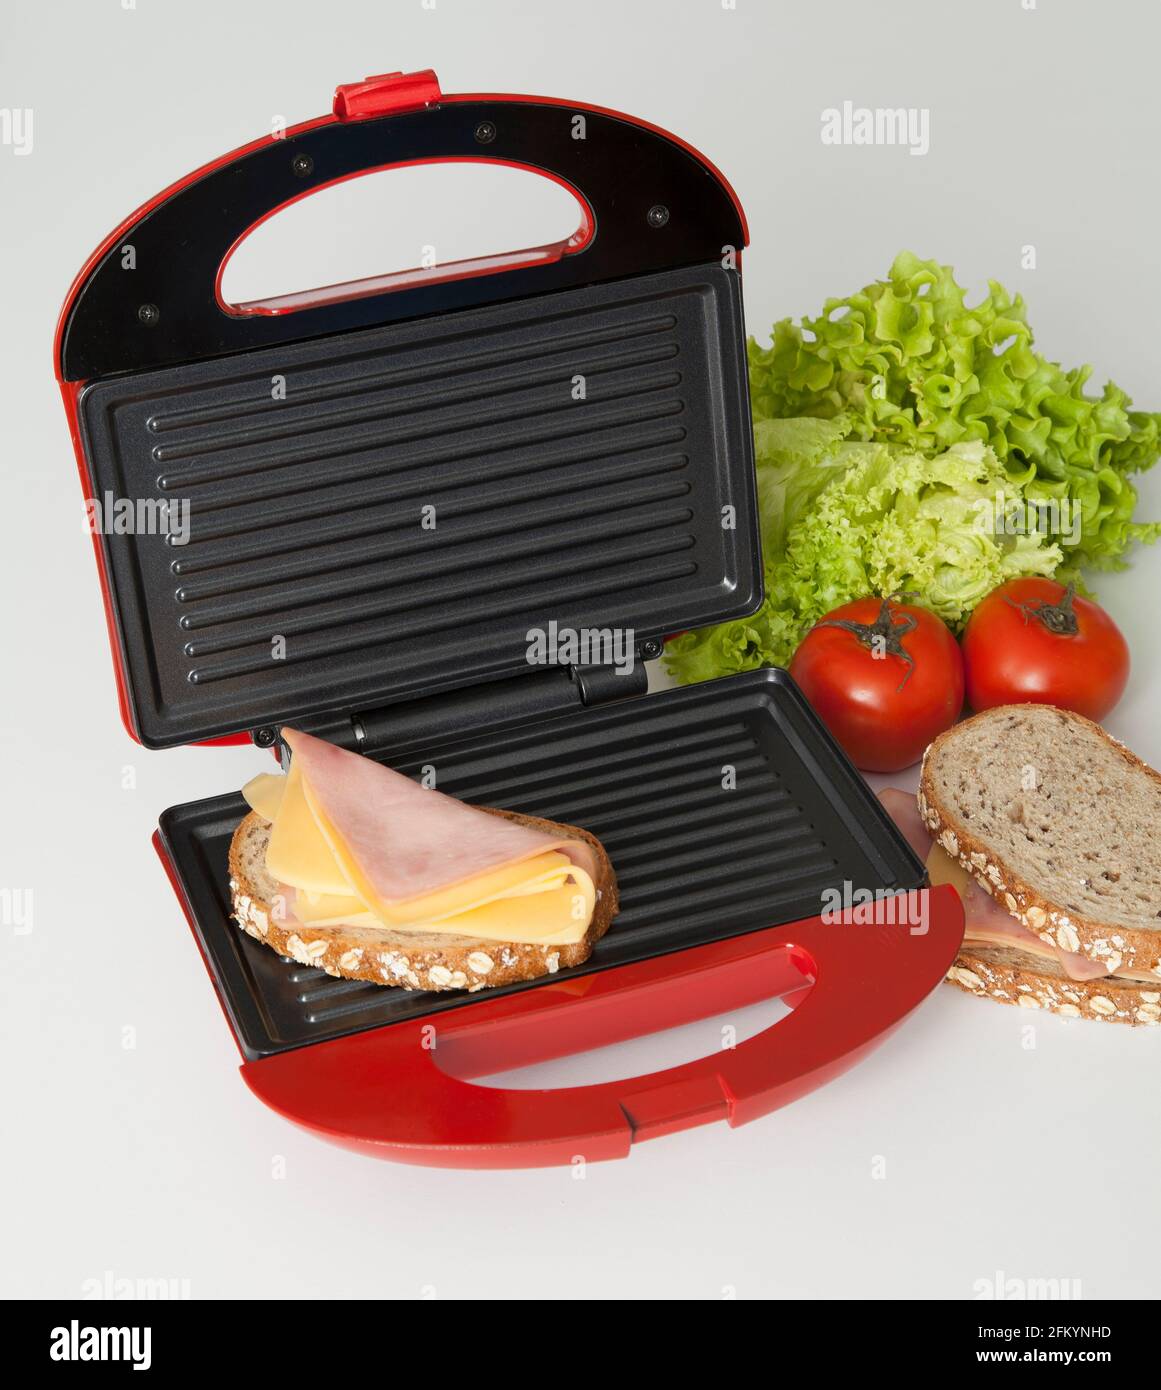 Sandwichera roja con la comida Fotografía de stock - Alamy